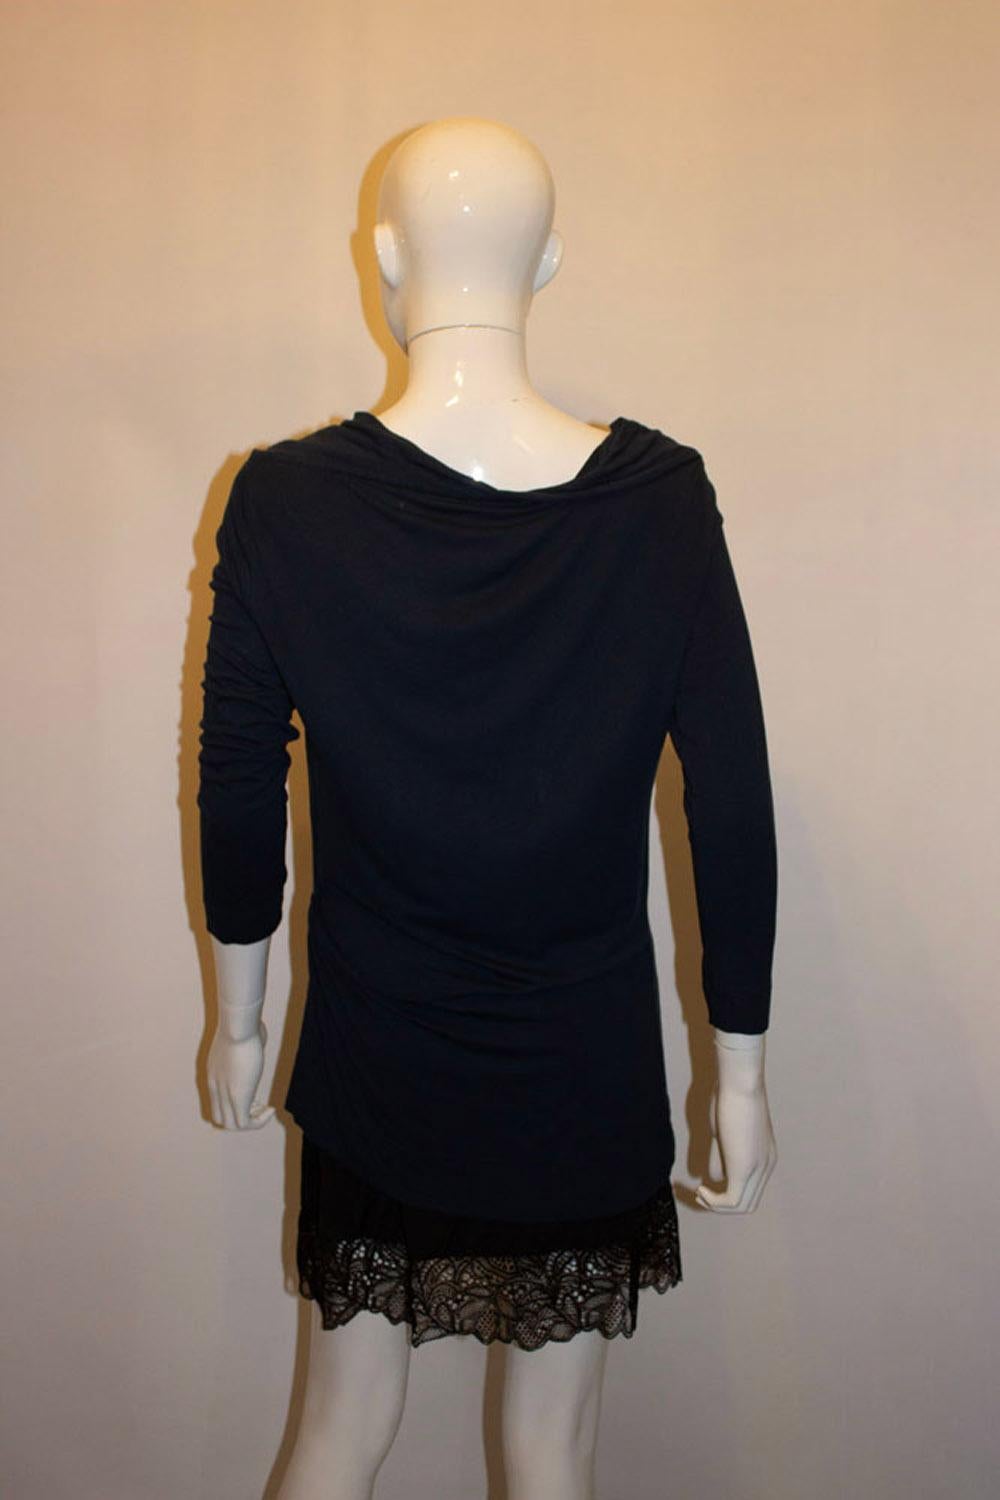 Un magnifique top en jersey de coton, facile à porter.  la défunte styliste britannique Vivienne Westwood. Ce haut présente un col bénitier, des manches longues et des détails sur le côté droit. Taille XL Mesures : 
Buste 37'', longueur 24''